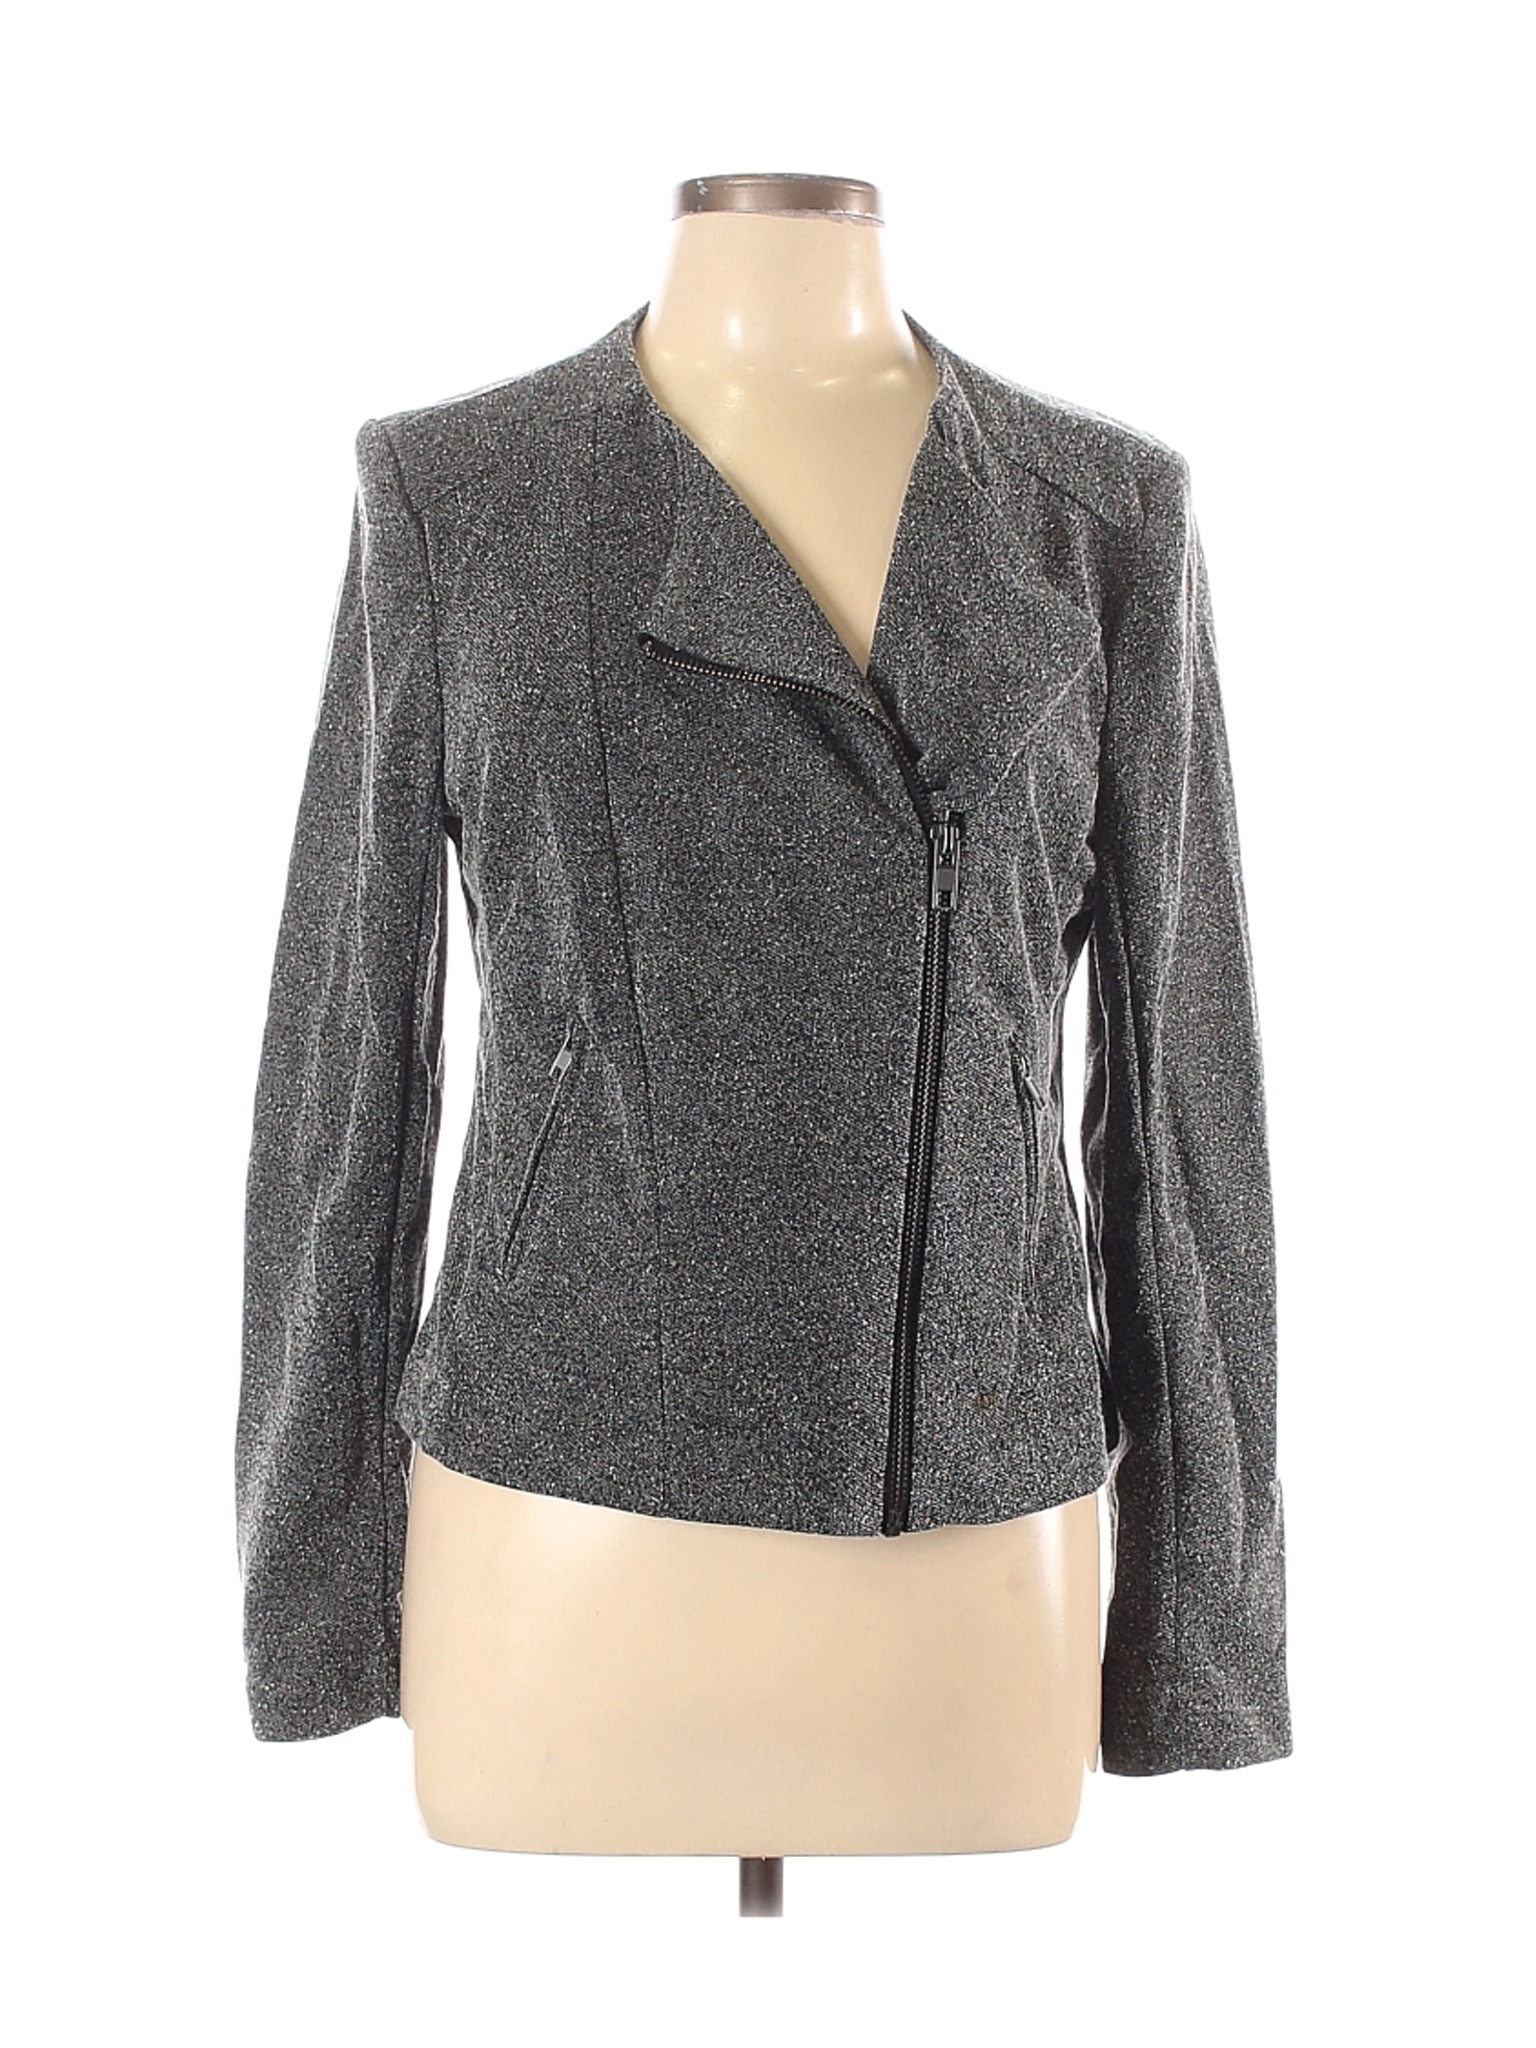 Catherine Malandrino Runway Style Women Gray Jacket L | eBay